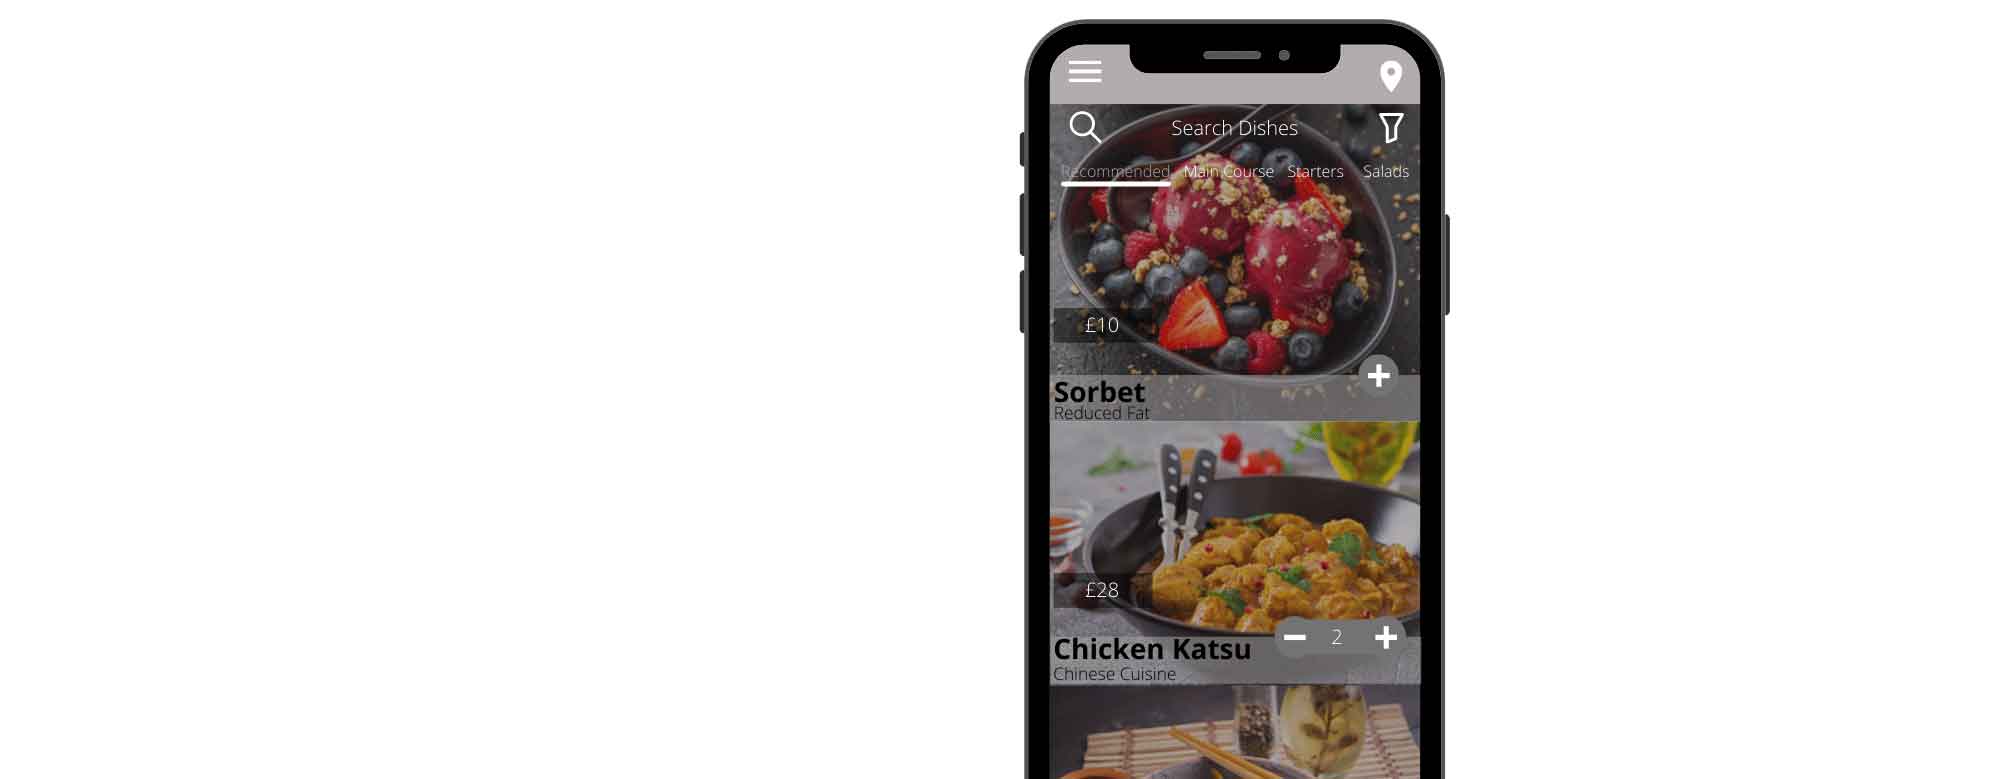 food-app-select